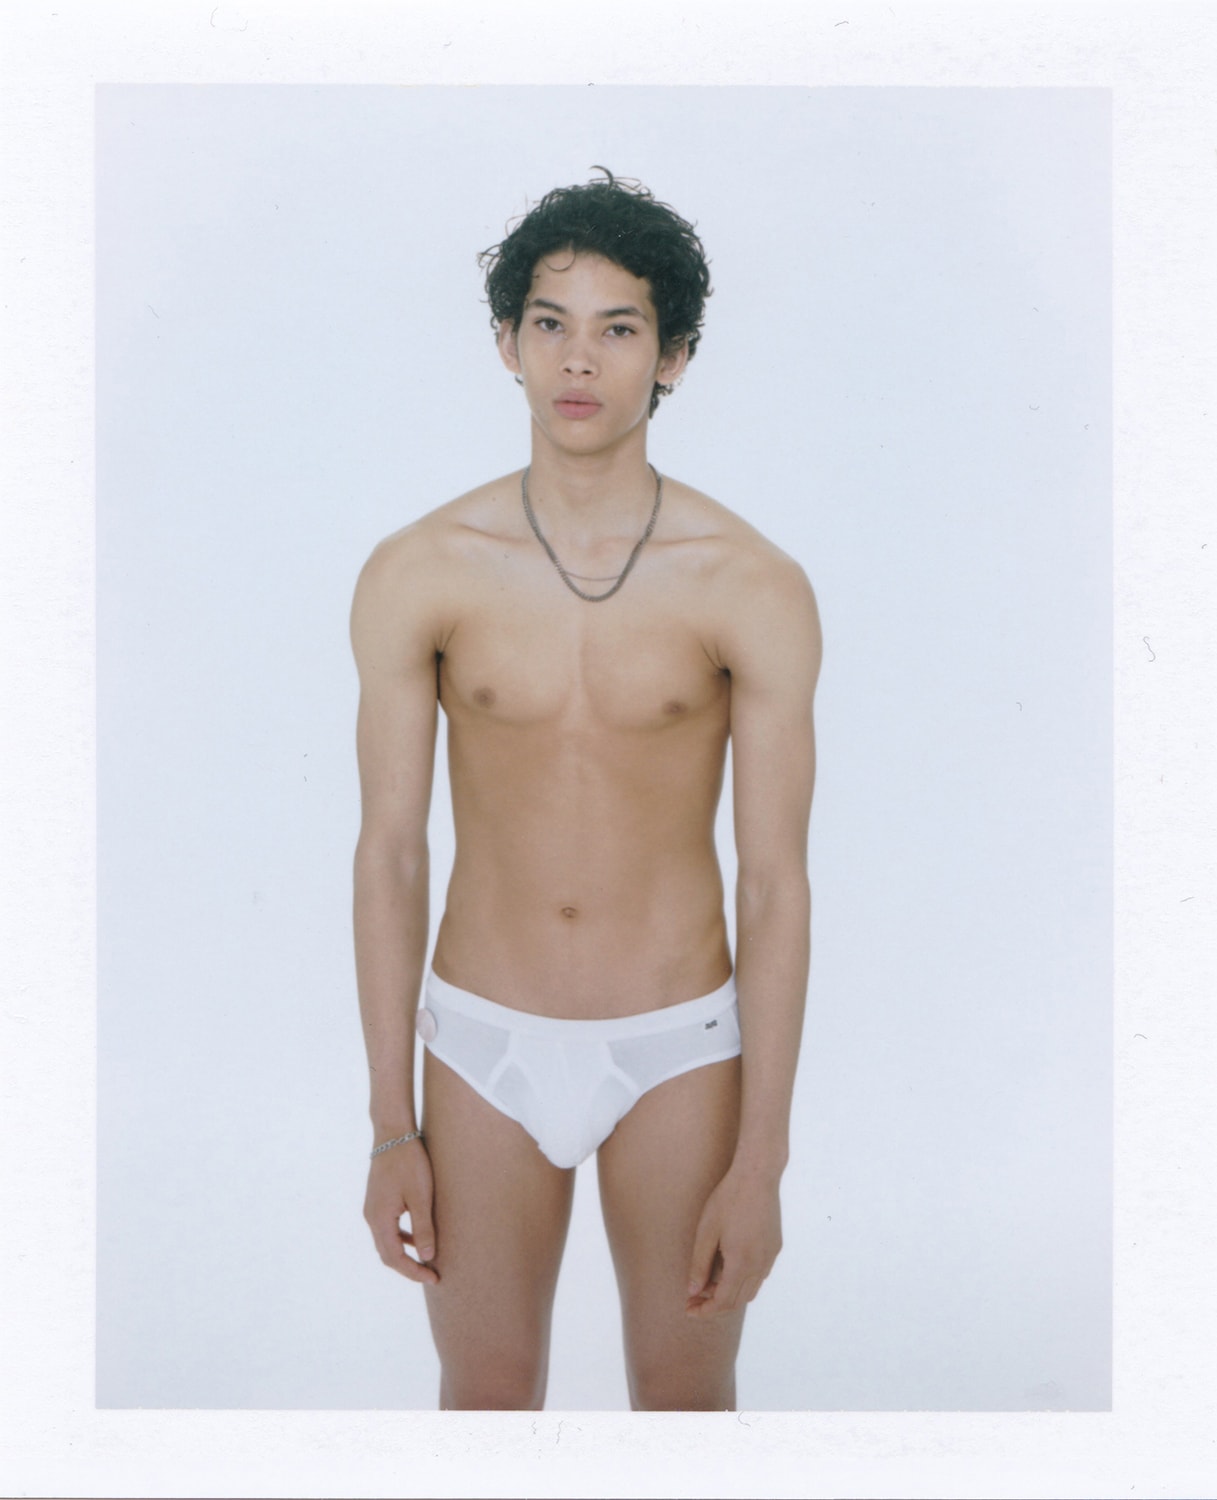 les girls les boys campaign beauty standards Fabien Montique polaroids lingerie unisex